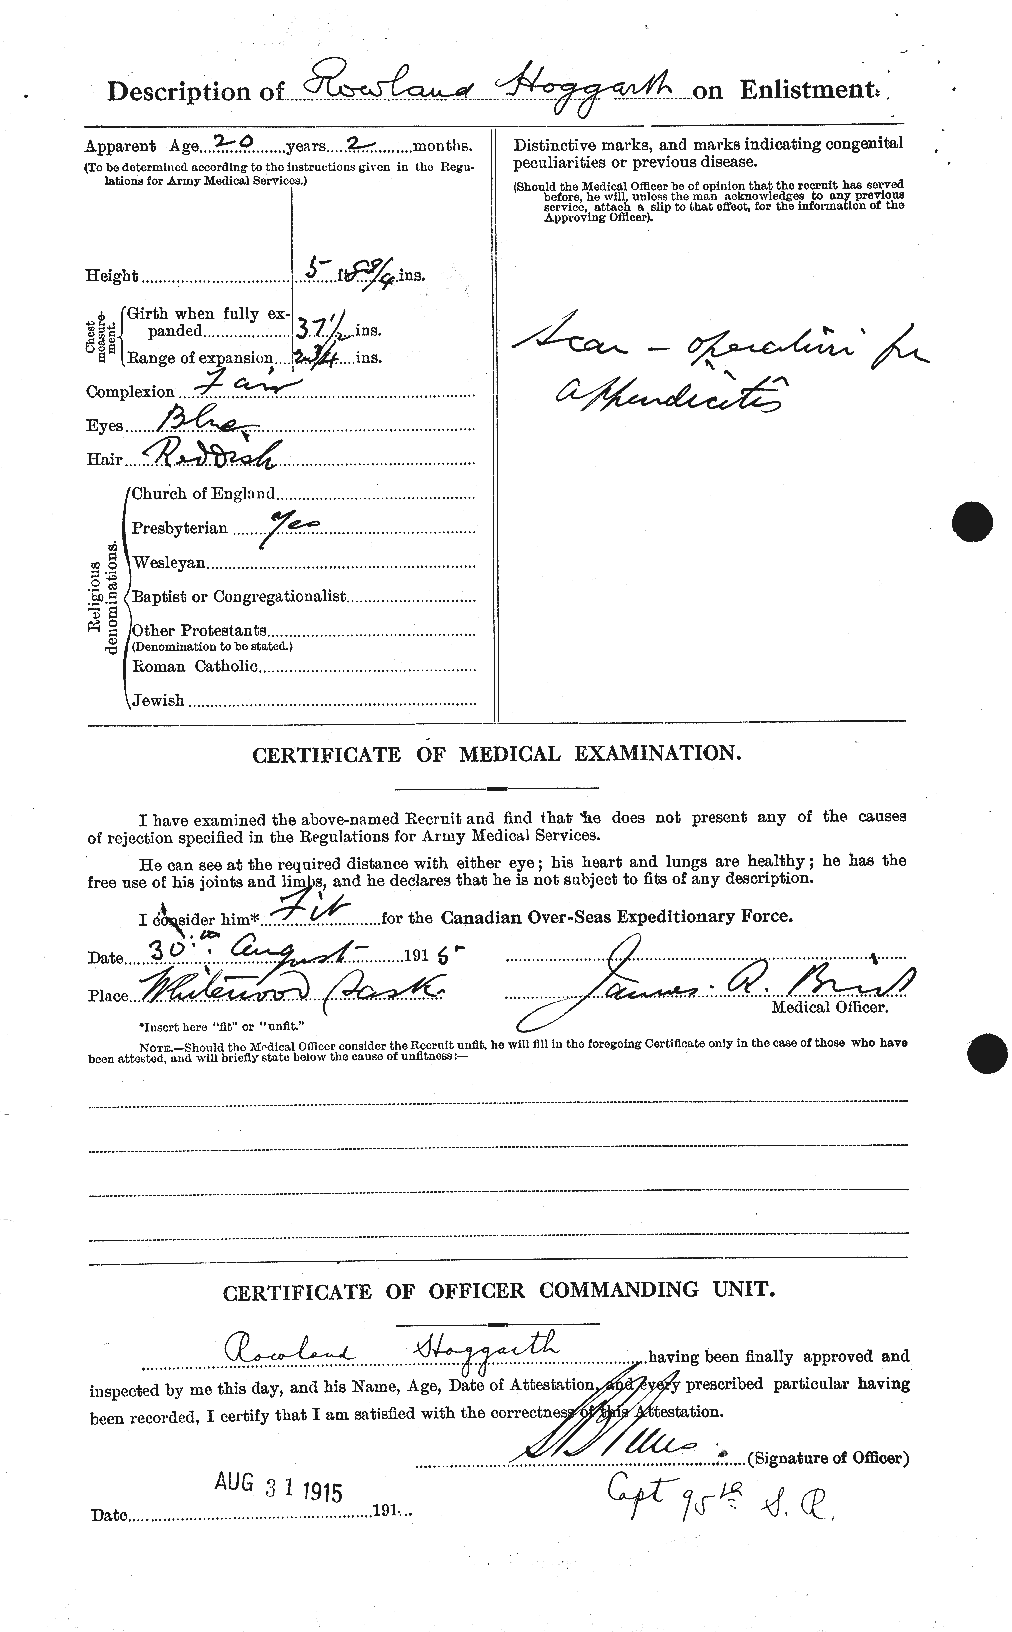 Dossiers du Personnel de la Première Guerre mondiale - CEC 396495b